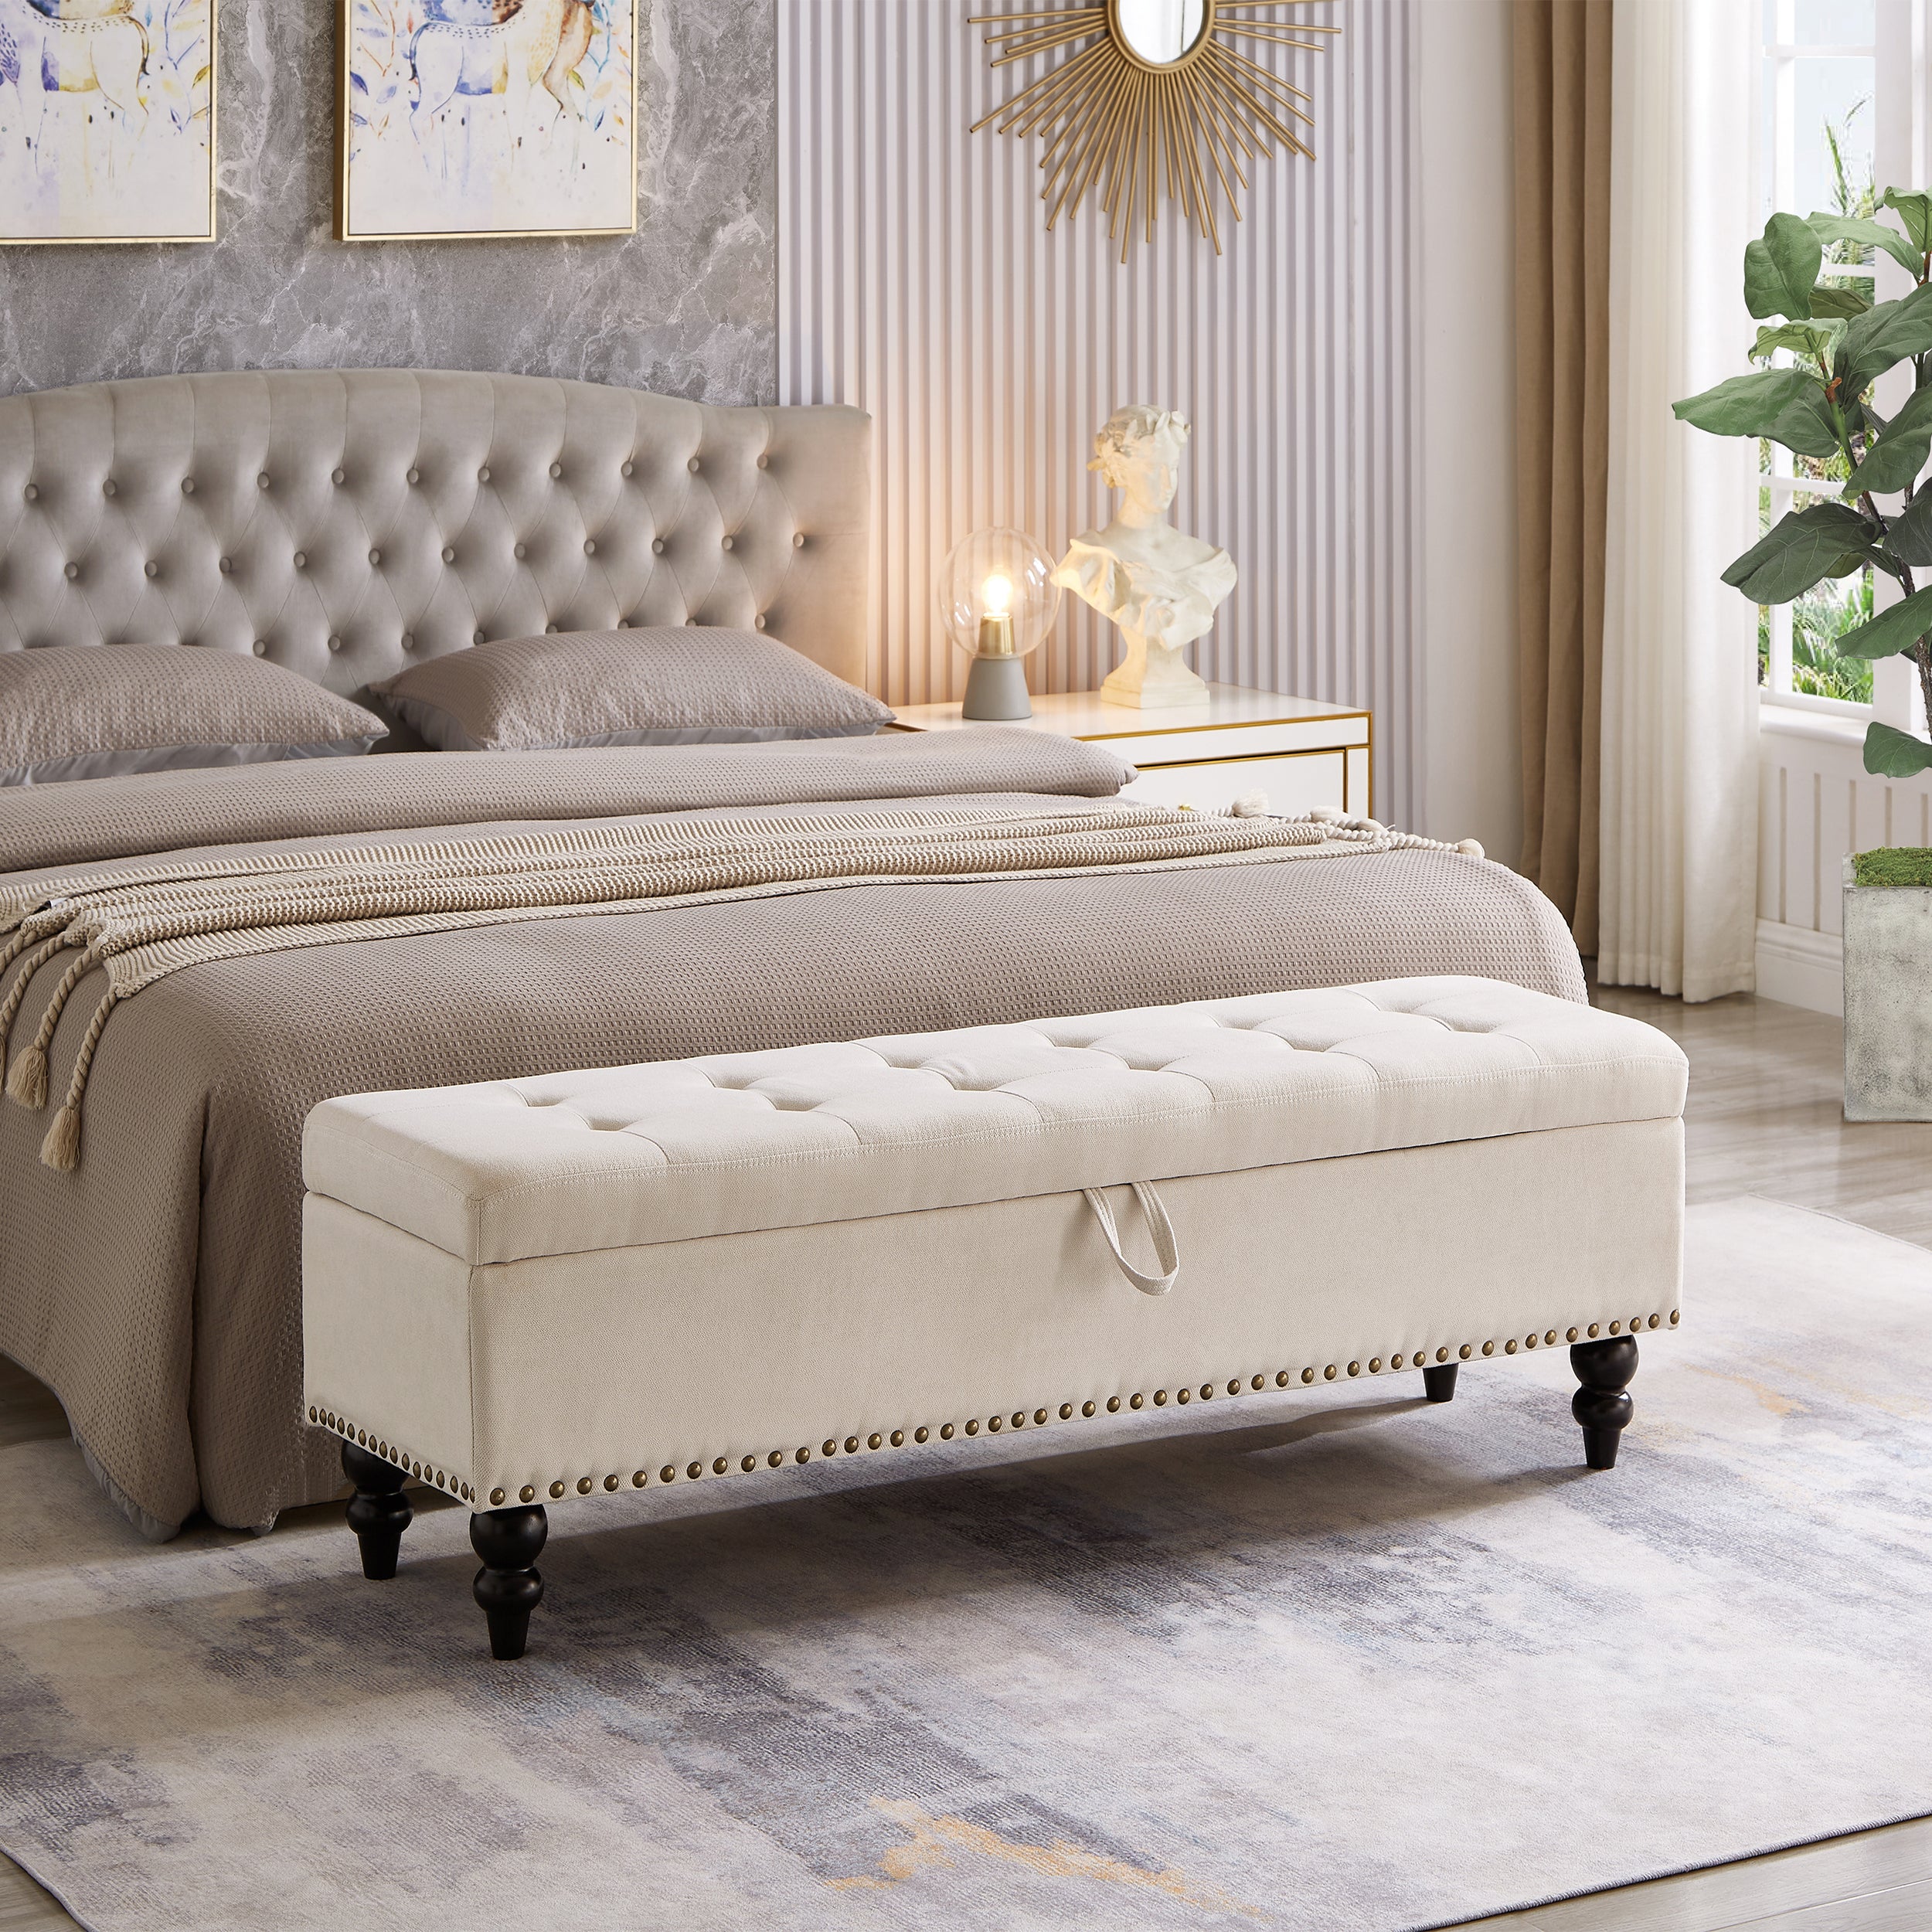 59" Linen Fabric Storage Bench for Entryway, Bedroom, Livingroom